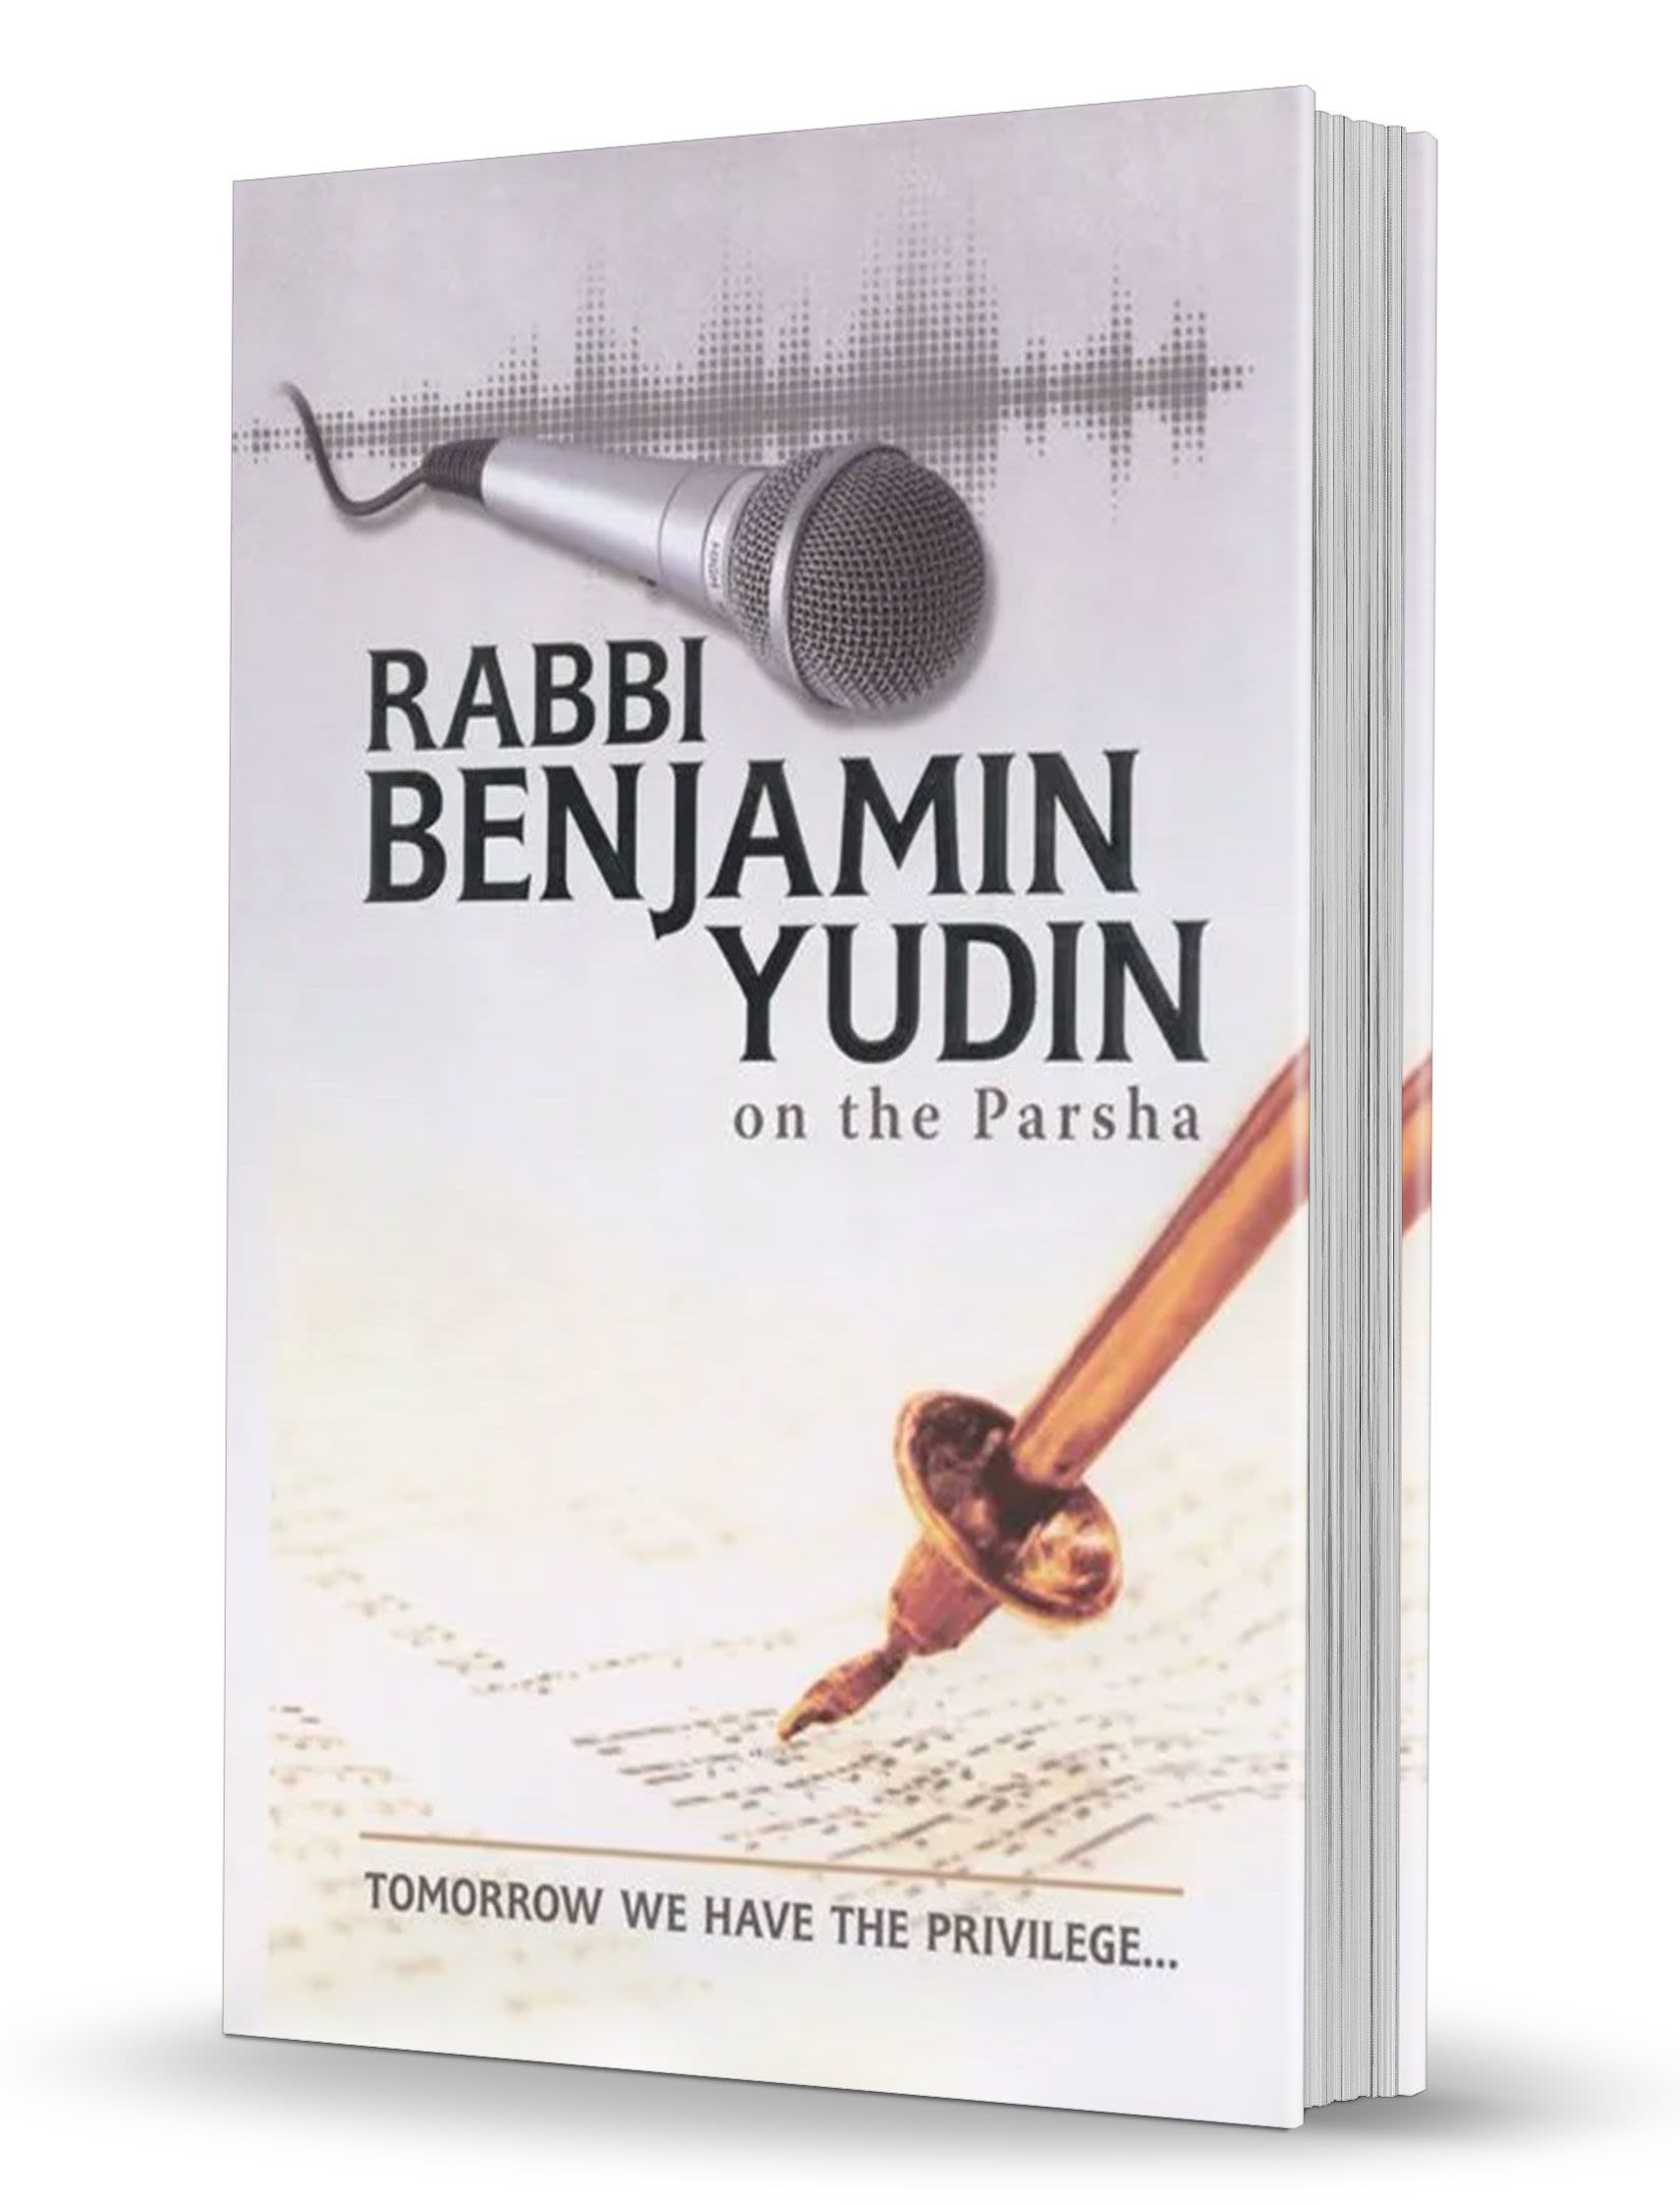 Rabbi Benjamin Yudin on the Parsha